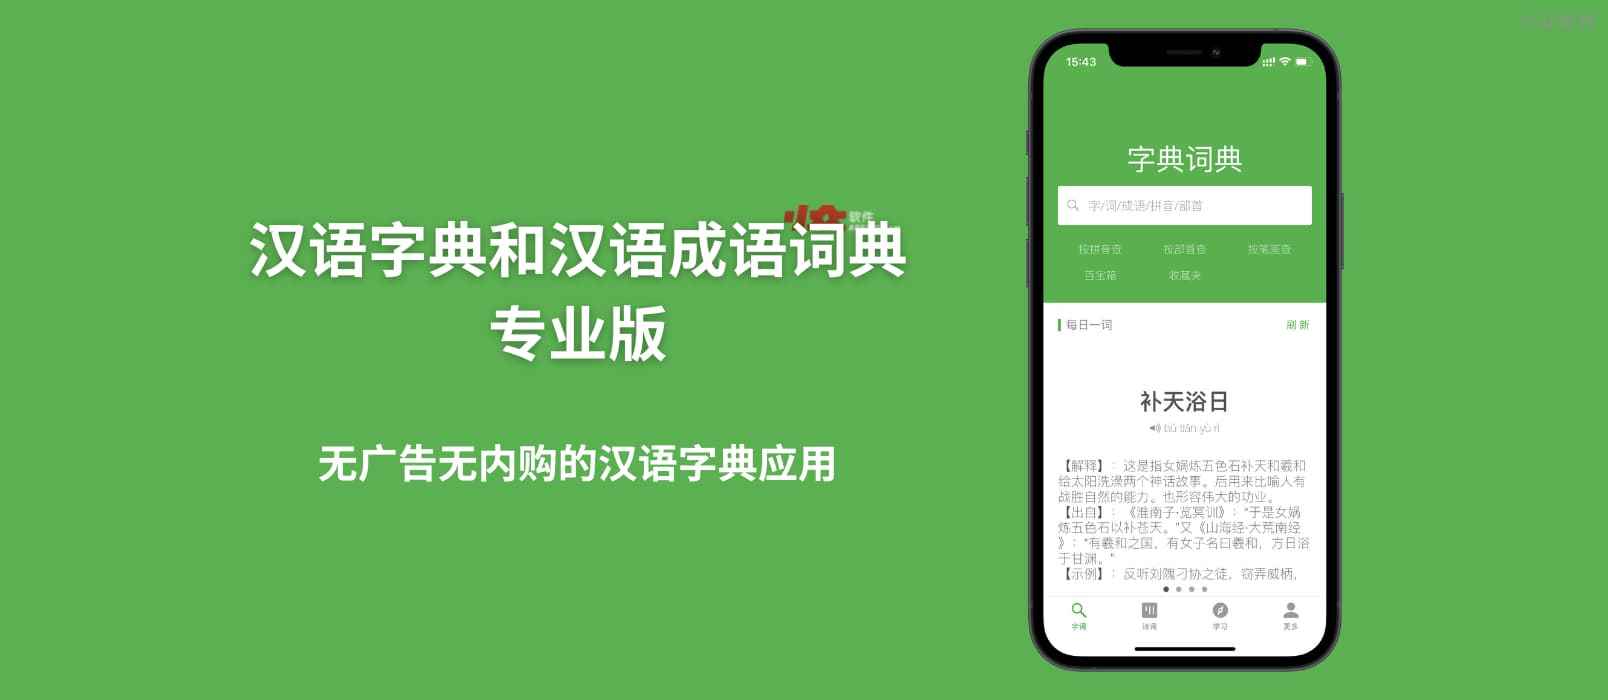 汉语字典和汉语成语词典专业版 – 无广告无内购的汉语字典应用[iPhone/iPad]